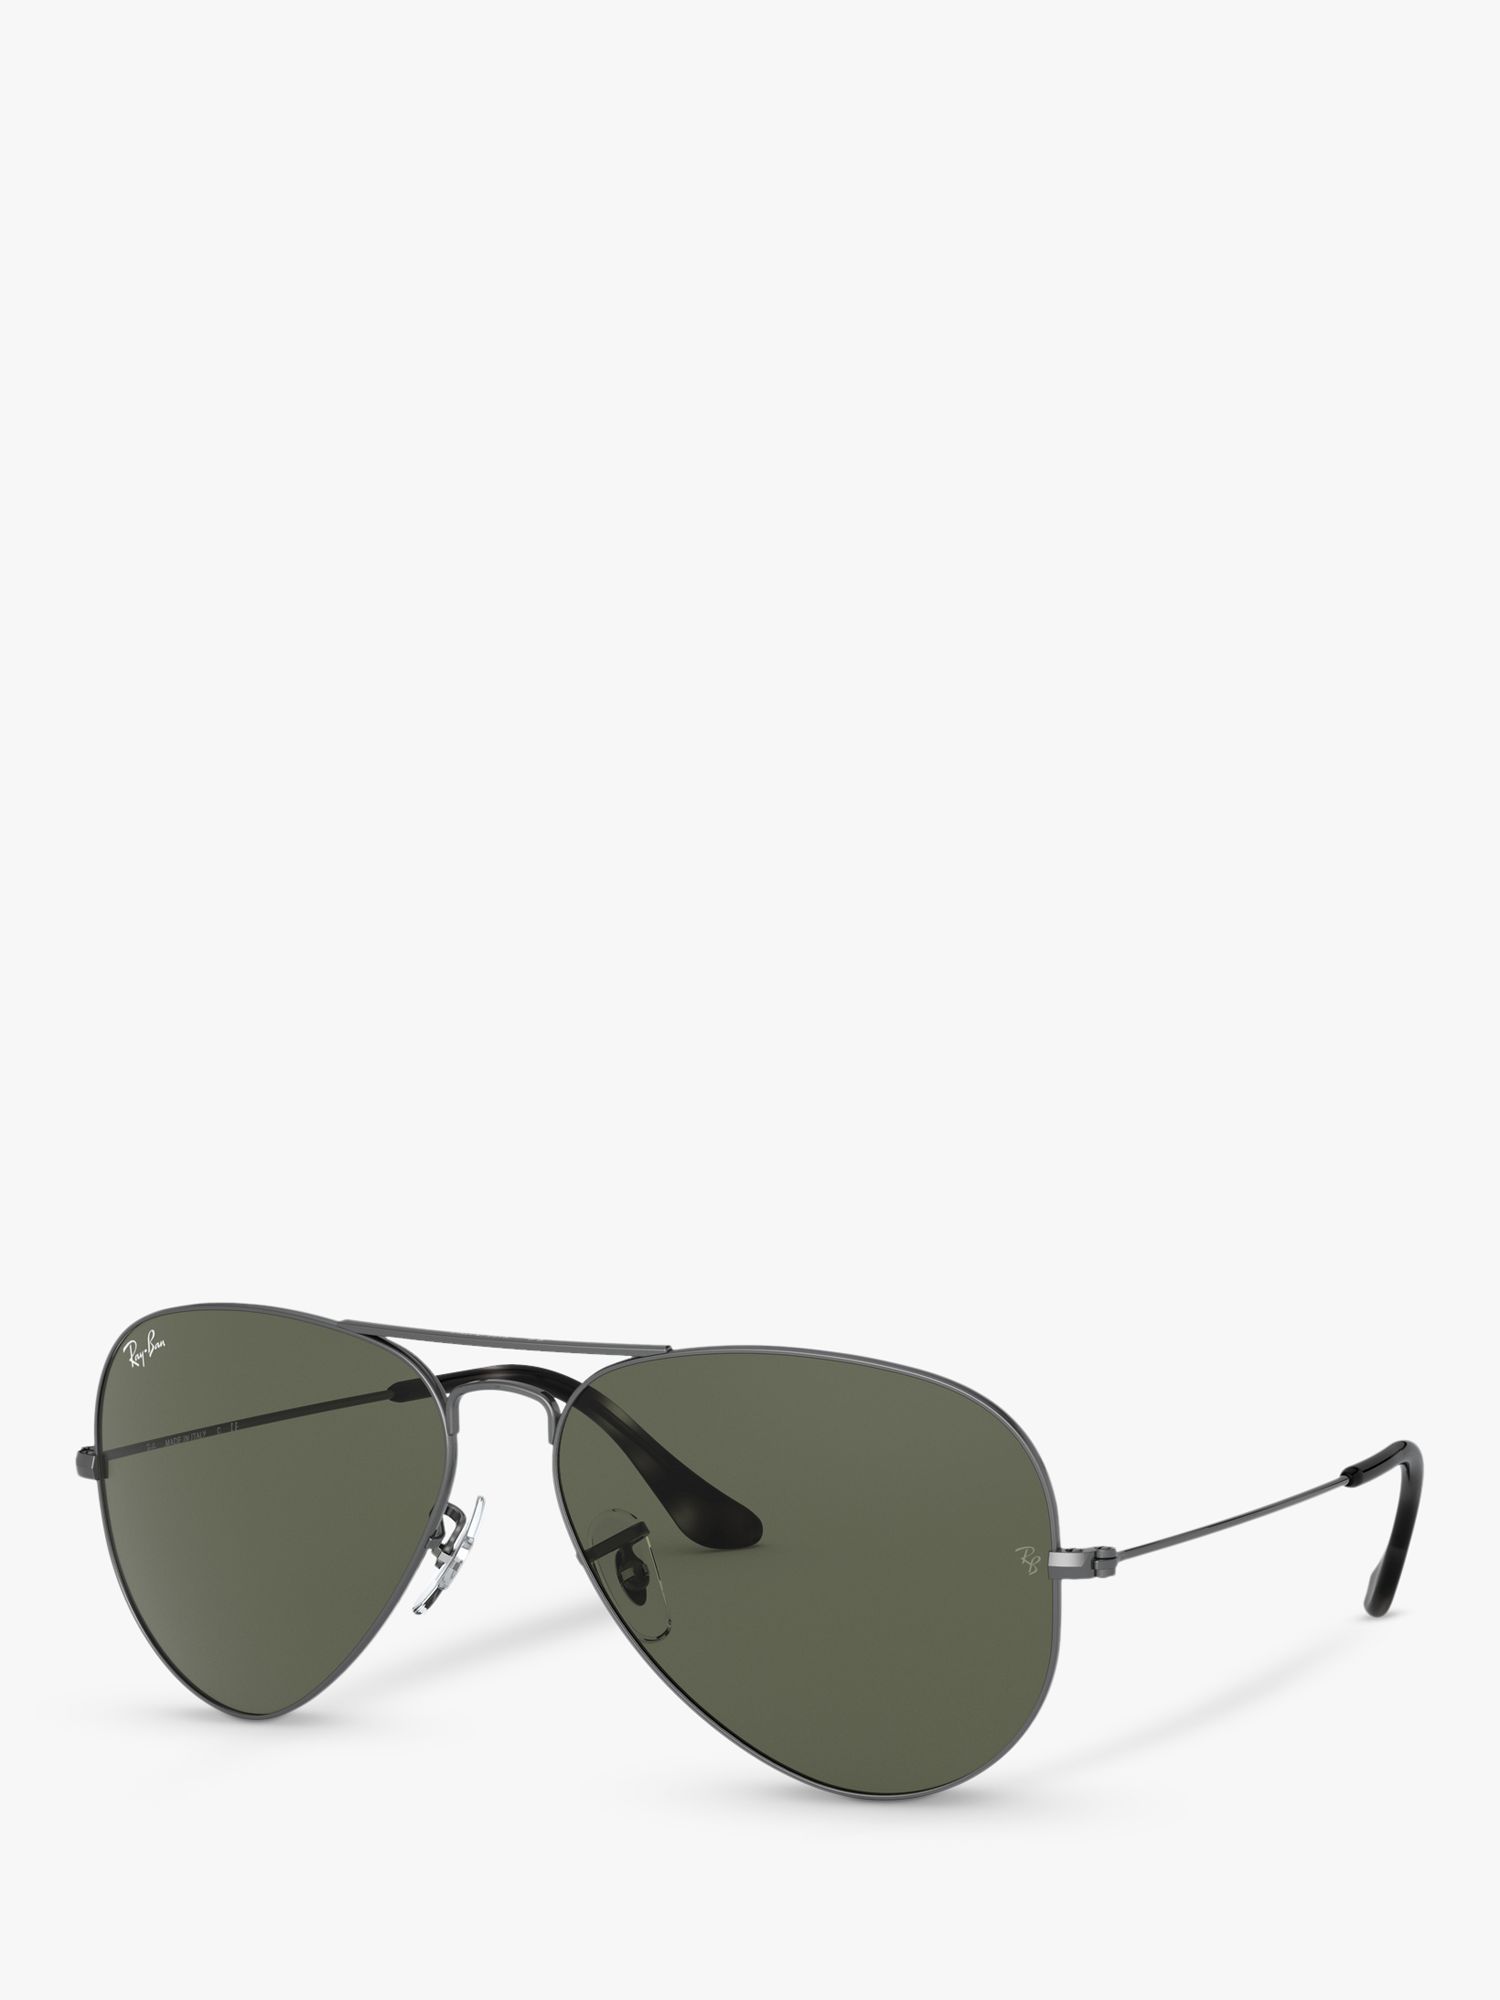 Women's Aviator Grey Sunglasses